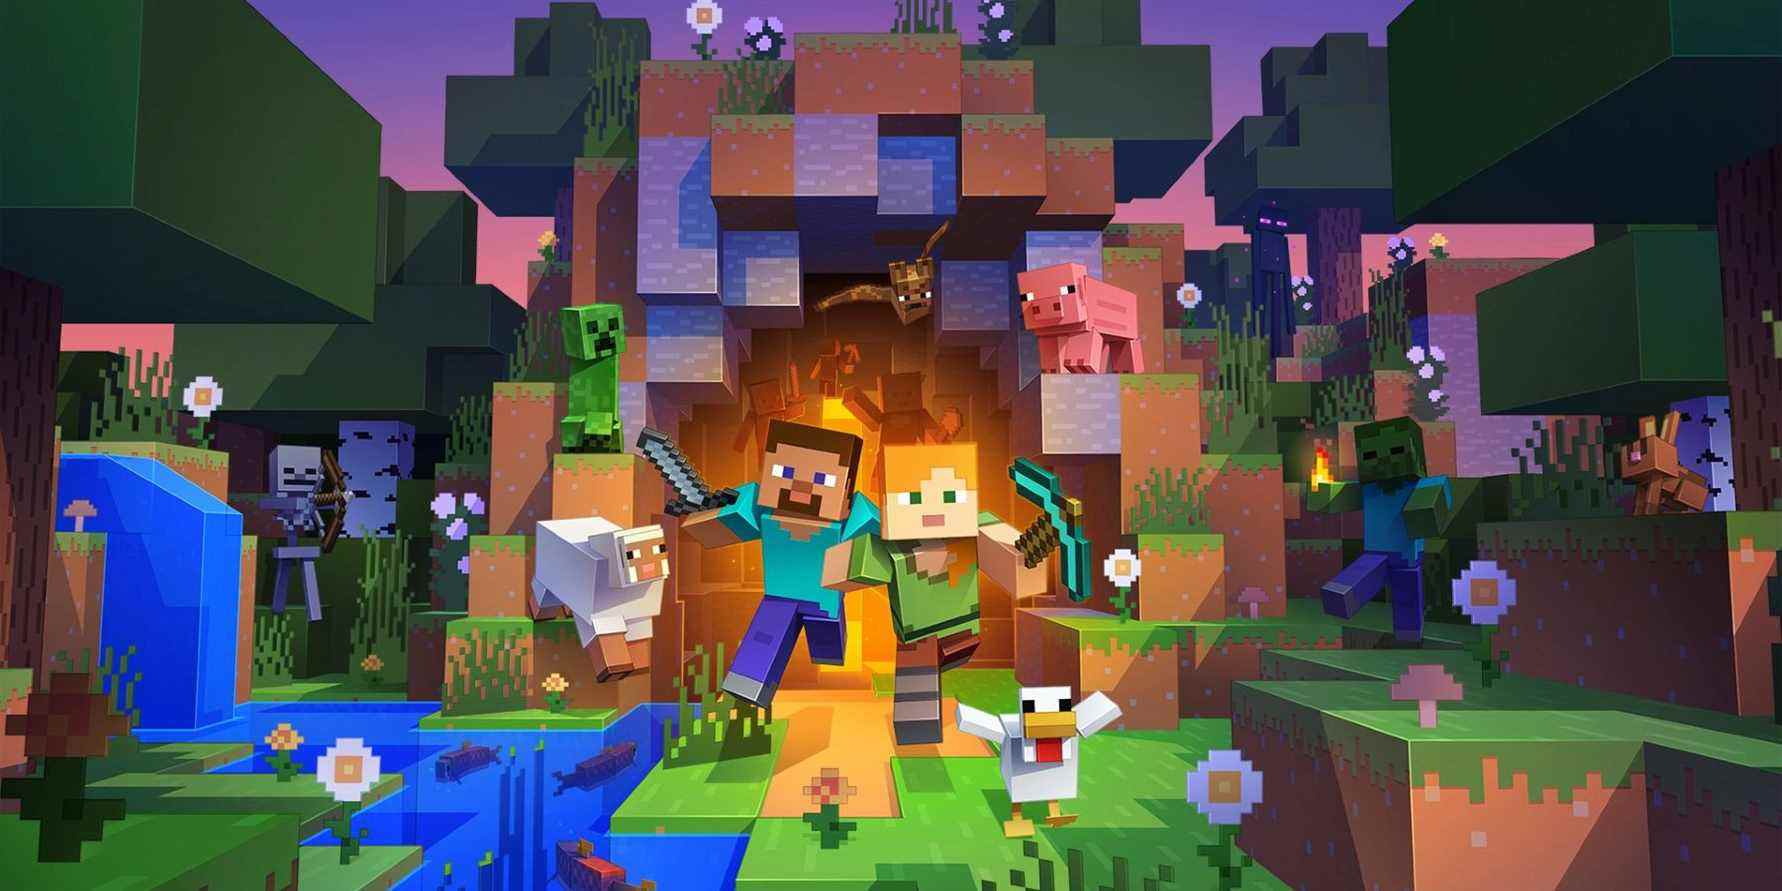 Image de Minecraft montrant un certain nombre de personnages sortant d'une grotte ouverte.